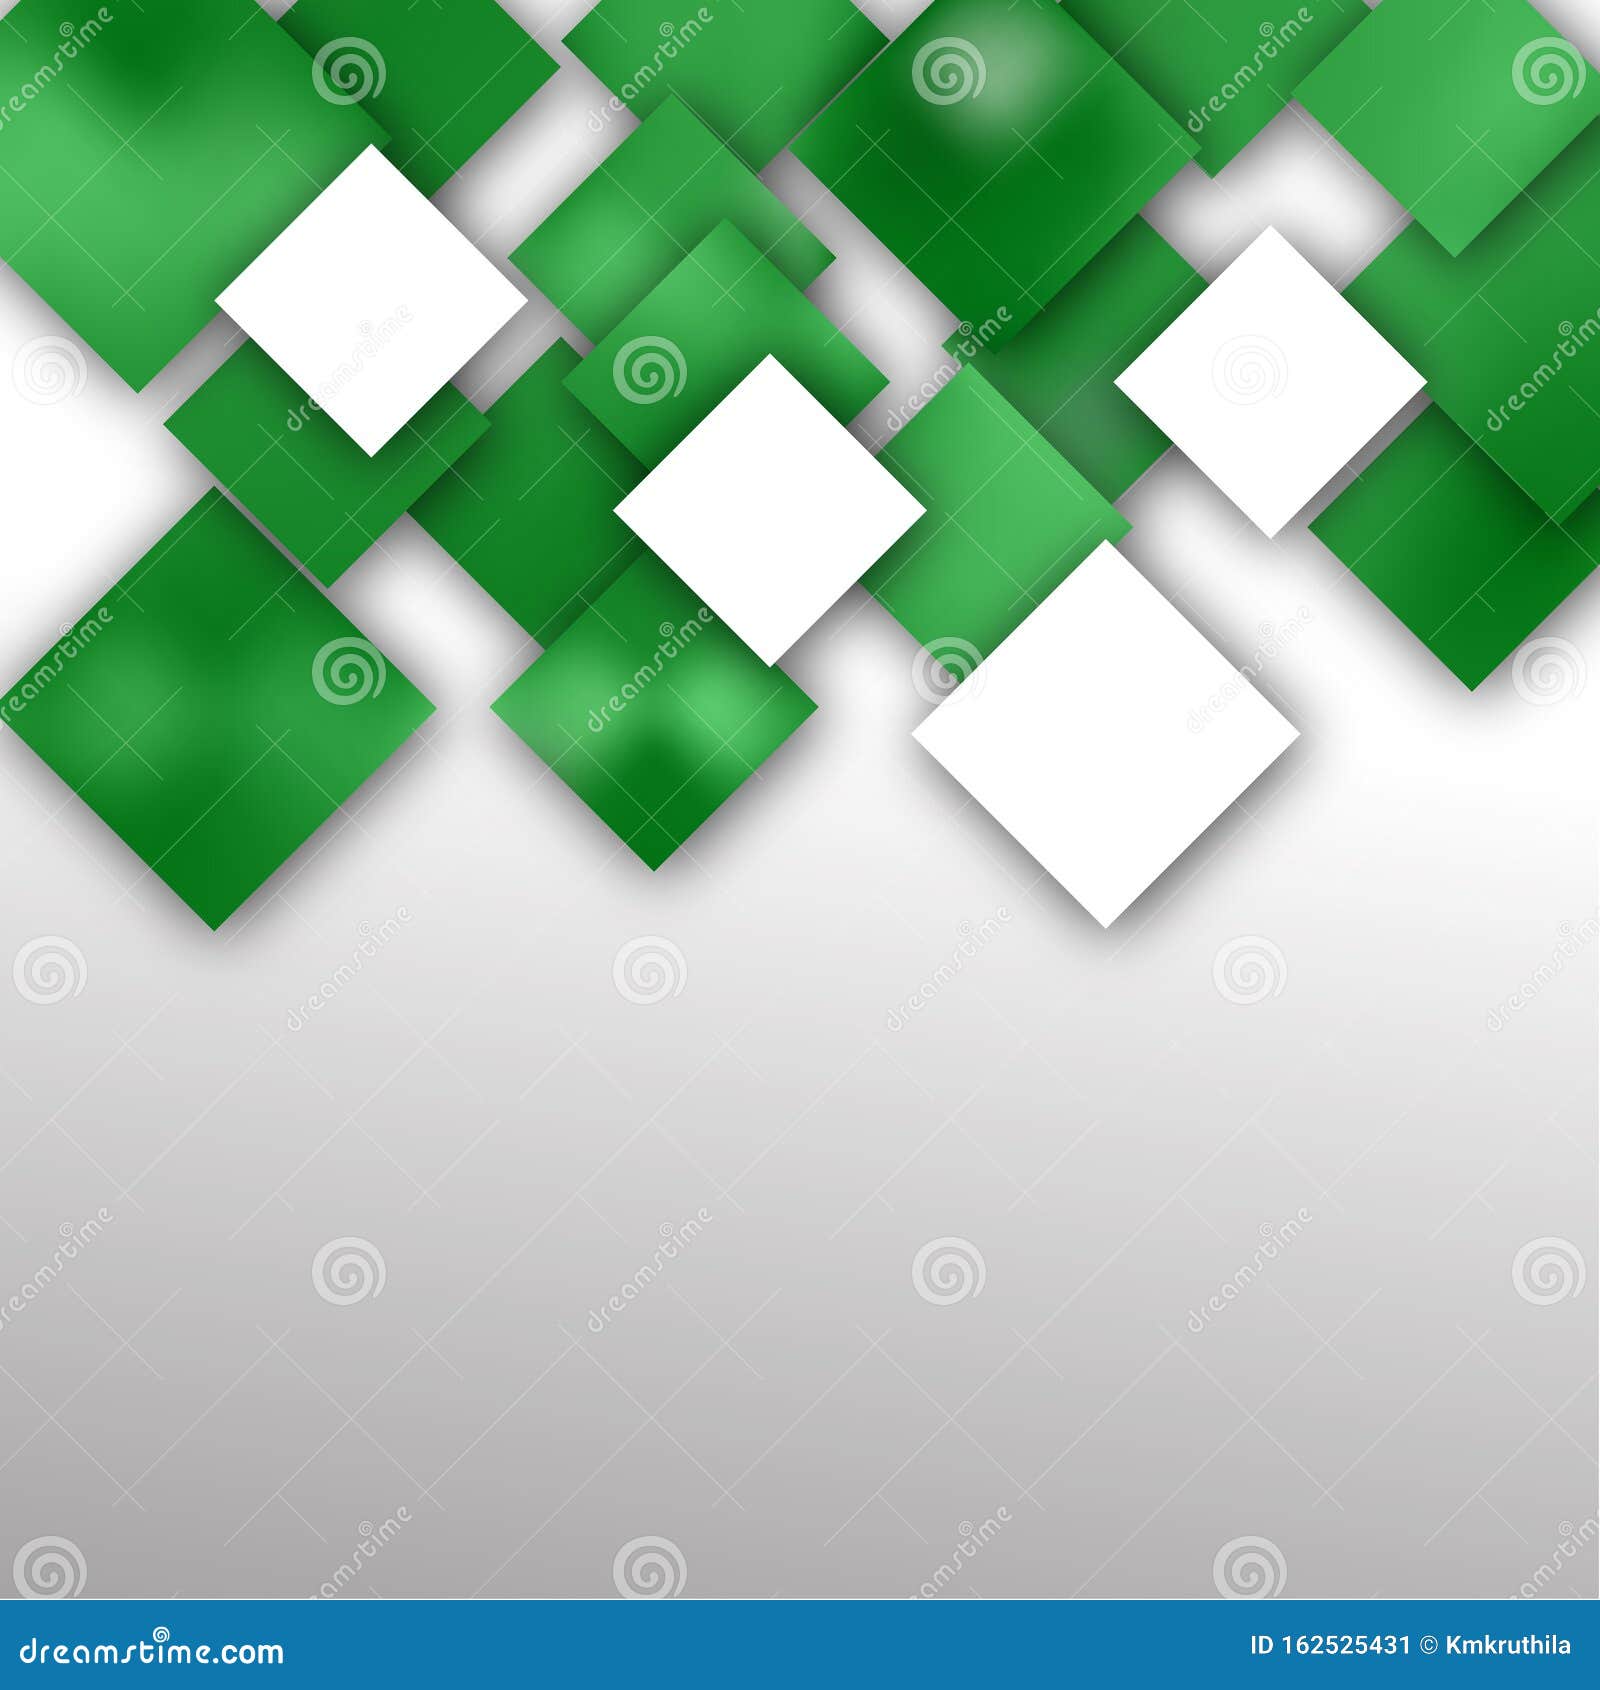 Hình nền trừu tượng vuông màu xanh lá cây: Với hình nền trừu tượng vuông màu xanh lá cây, bạn có thể thể hiện sự sang trọng và sáng tạo trong hình ảnh của mình. Hãy khám phá để tìm kiếm sự hoàn hảo cho hình ảnh của bạn!